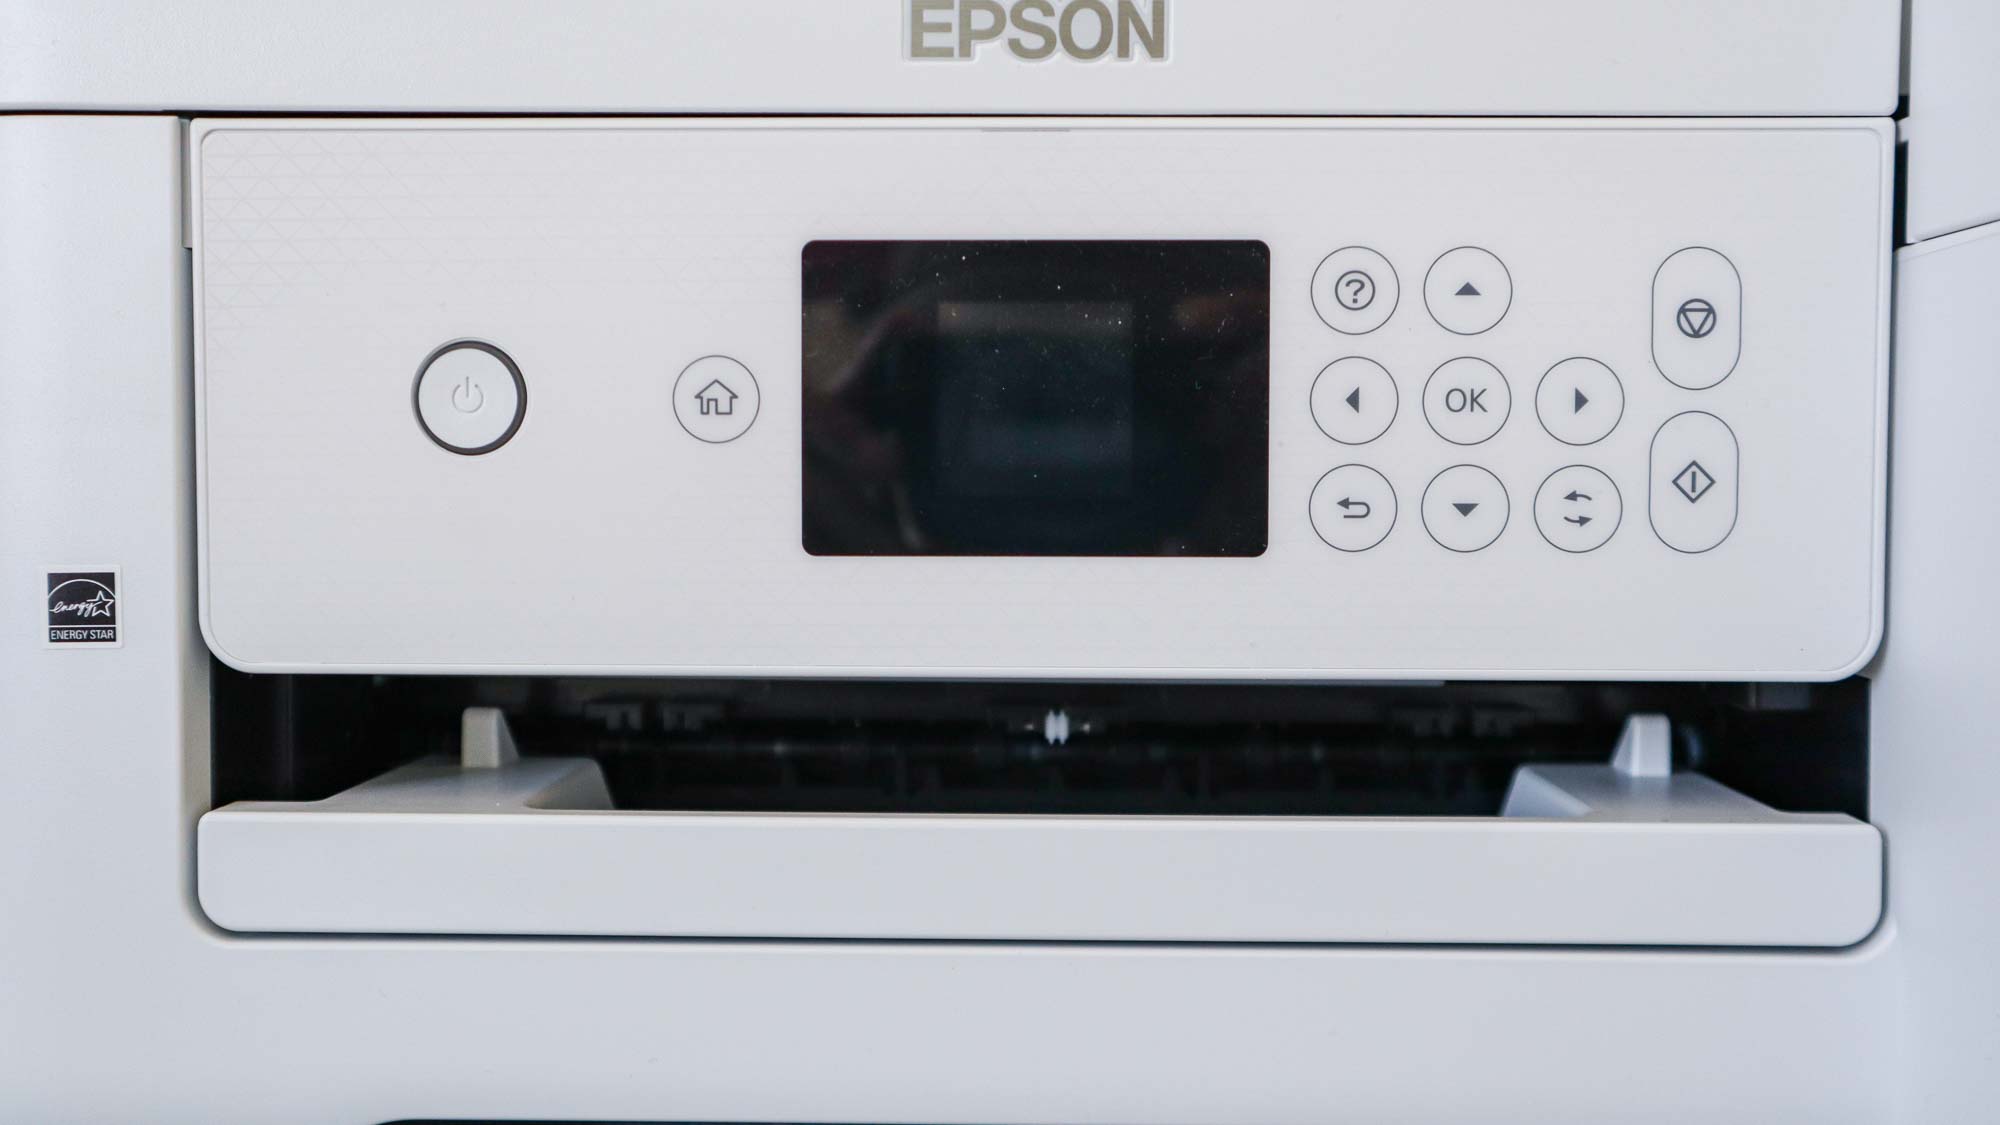 Epson ET-2850 printer sitting on desk